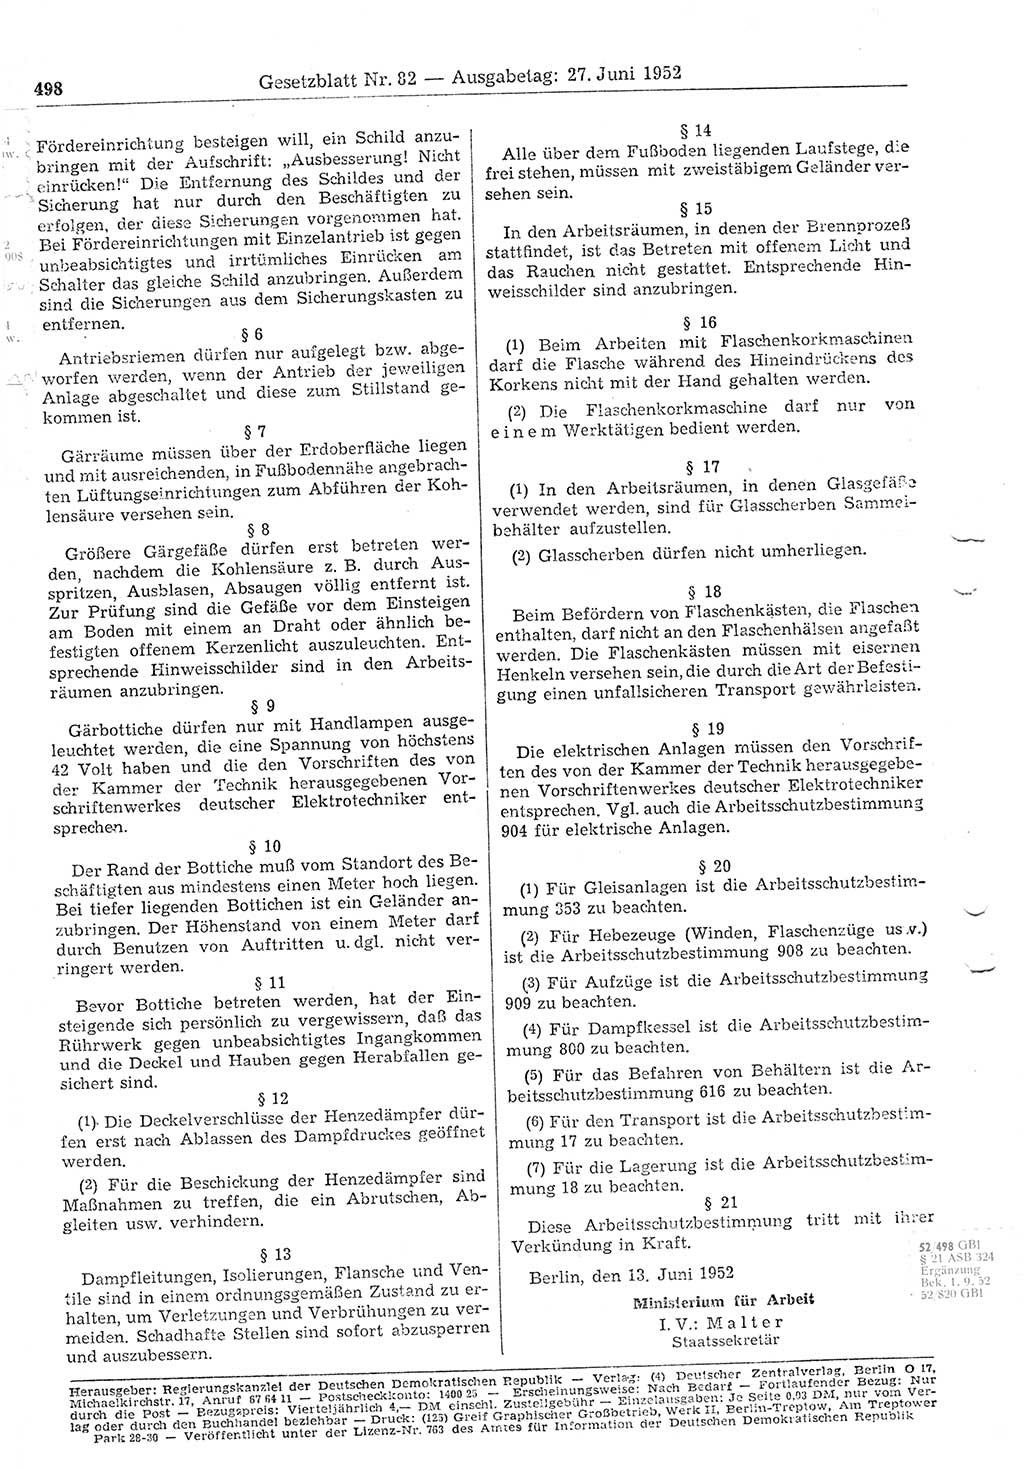 Gesetzblatt (GBl.) der Deutschen Demokratischen Republik (DDR) 1952, Seite 498 (GBl. DDR 1952, S. 498)